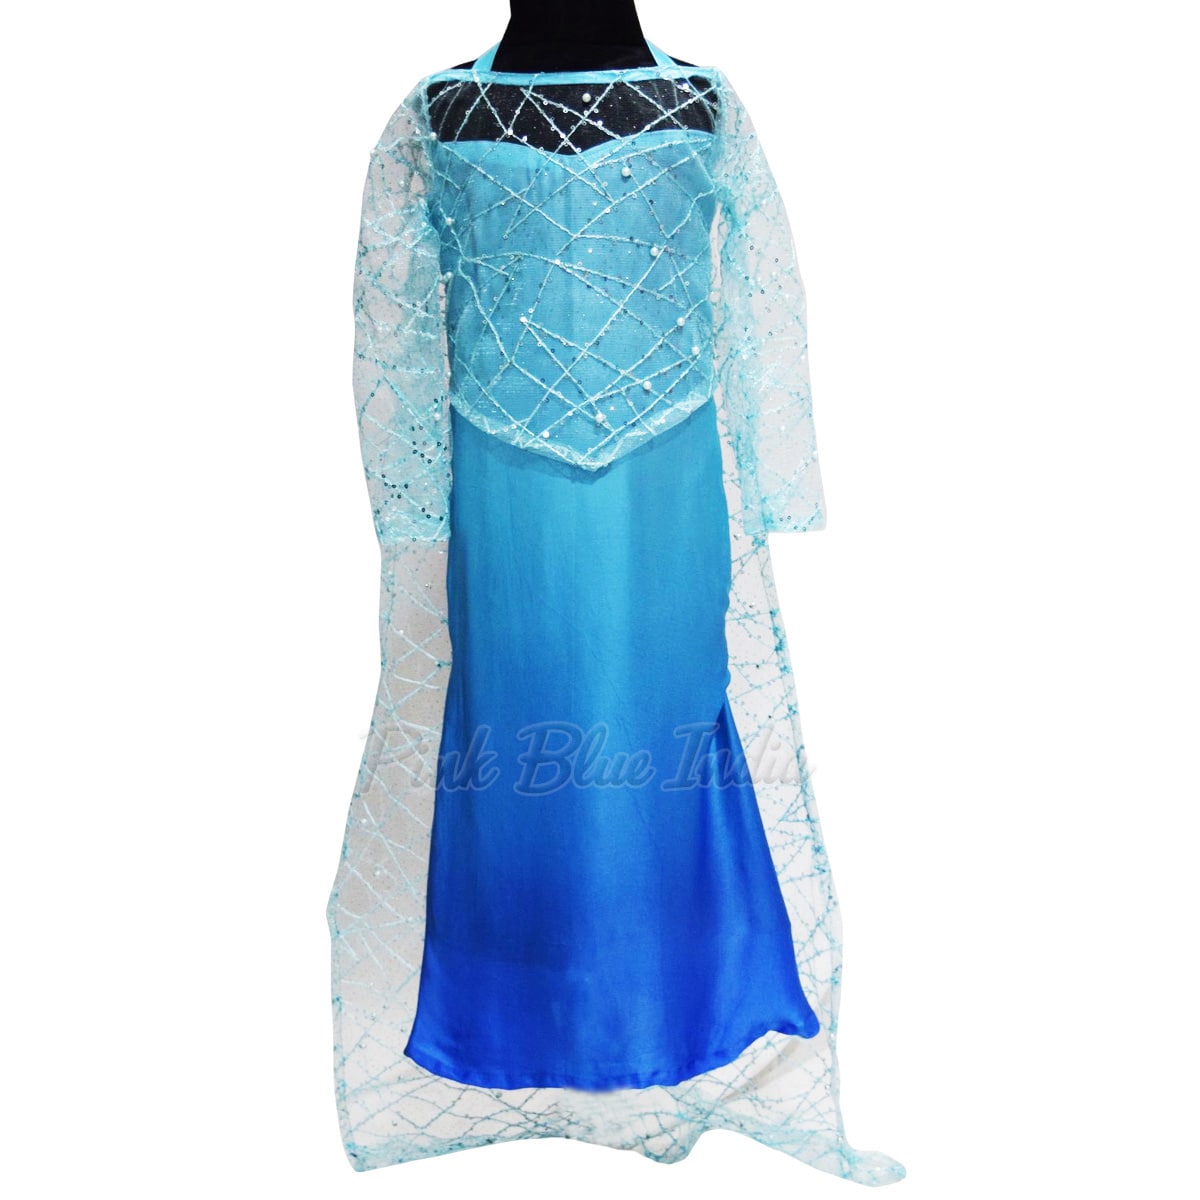 Frozen snow queen dress, Princess Elsa Birthday Theme Dress, Girls Frozen Gown